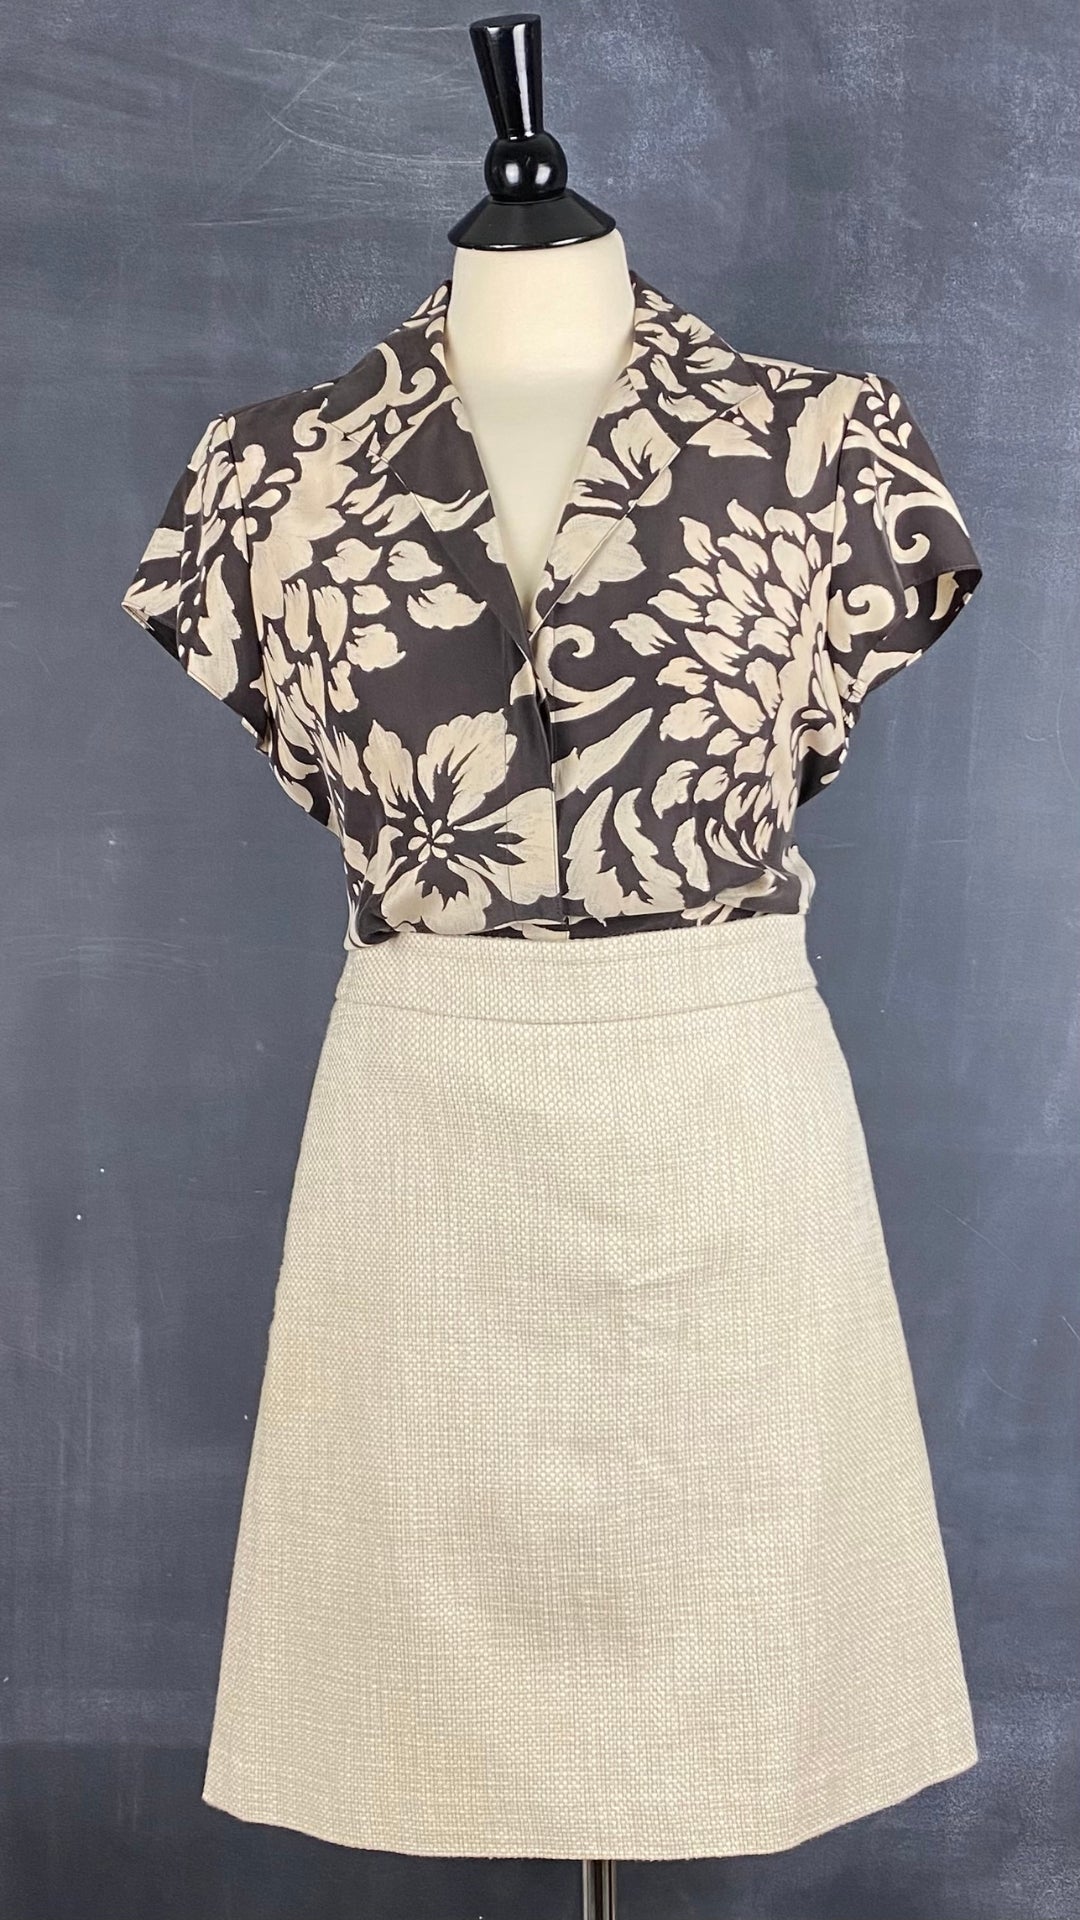 Chemisier floral en soie Jones New York, taille 6. Vue de l'agencement avec la jupe crème et sable en tweed.